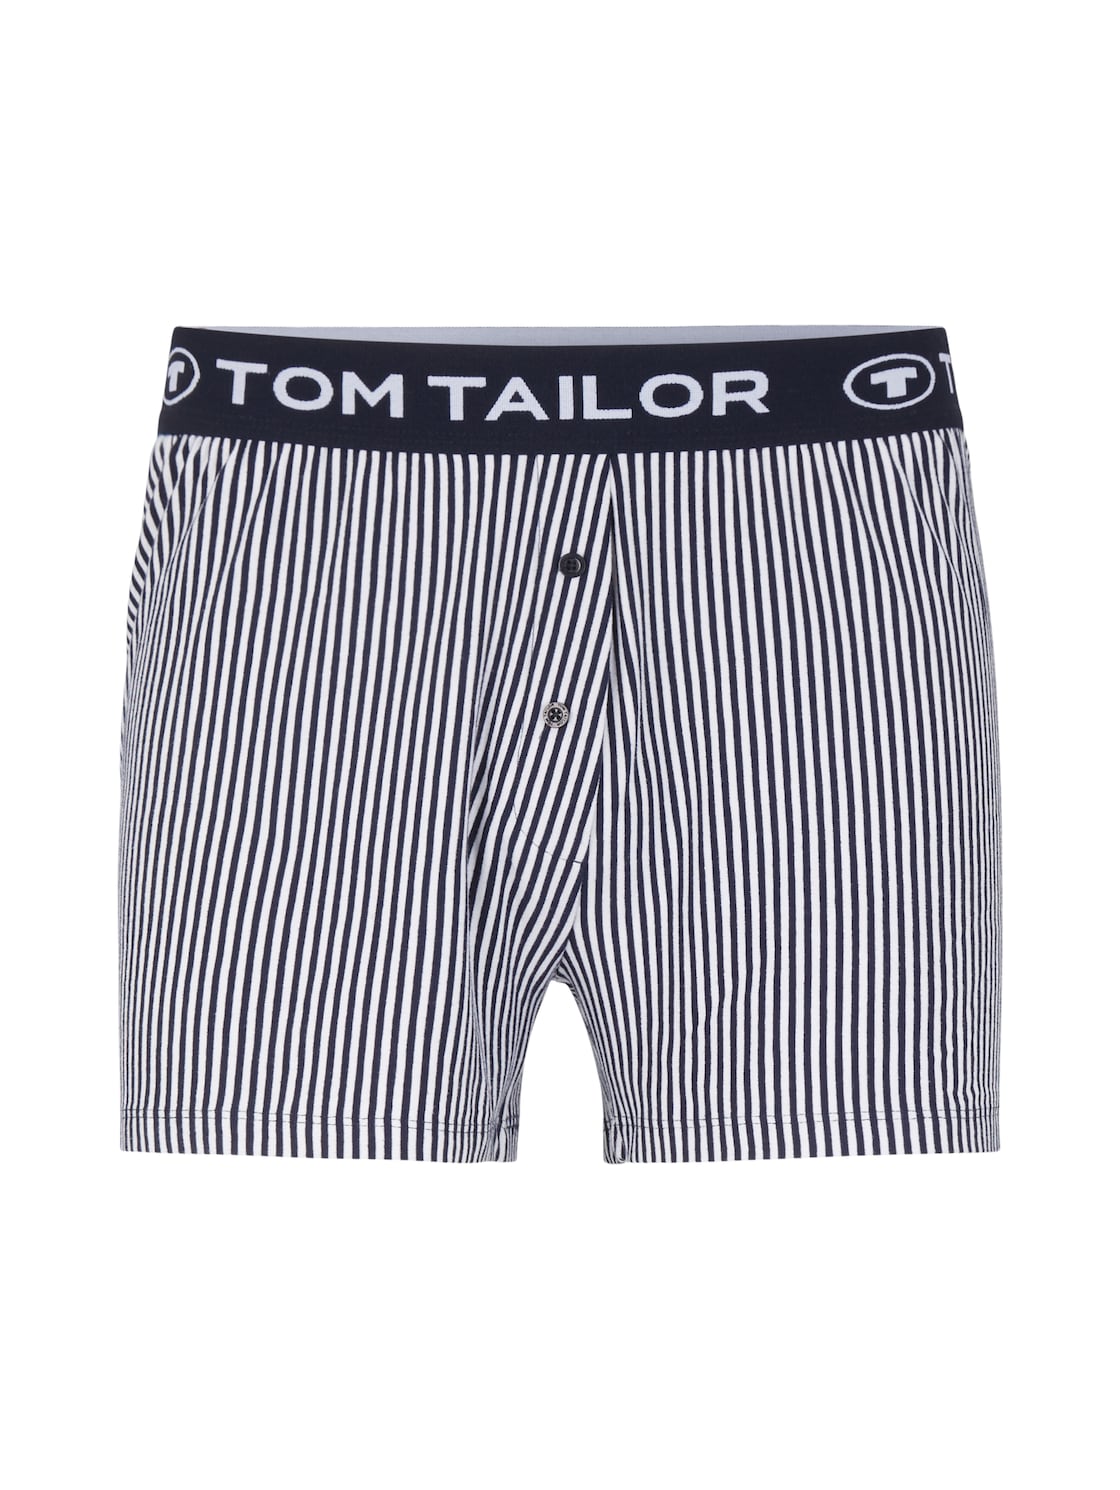 TOM TAILOR Damen Gestreifte Pyjamashort, blau, Streifenmuster, Gr. 38 von Tom Tailor